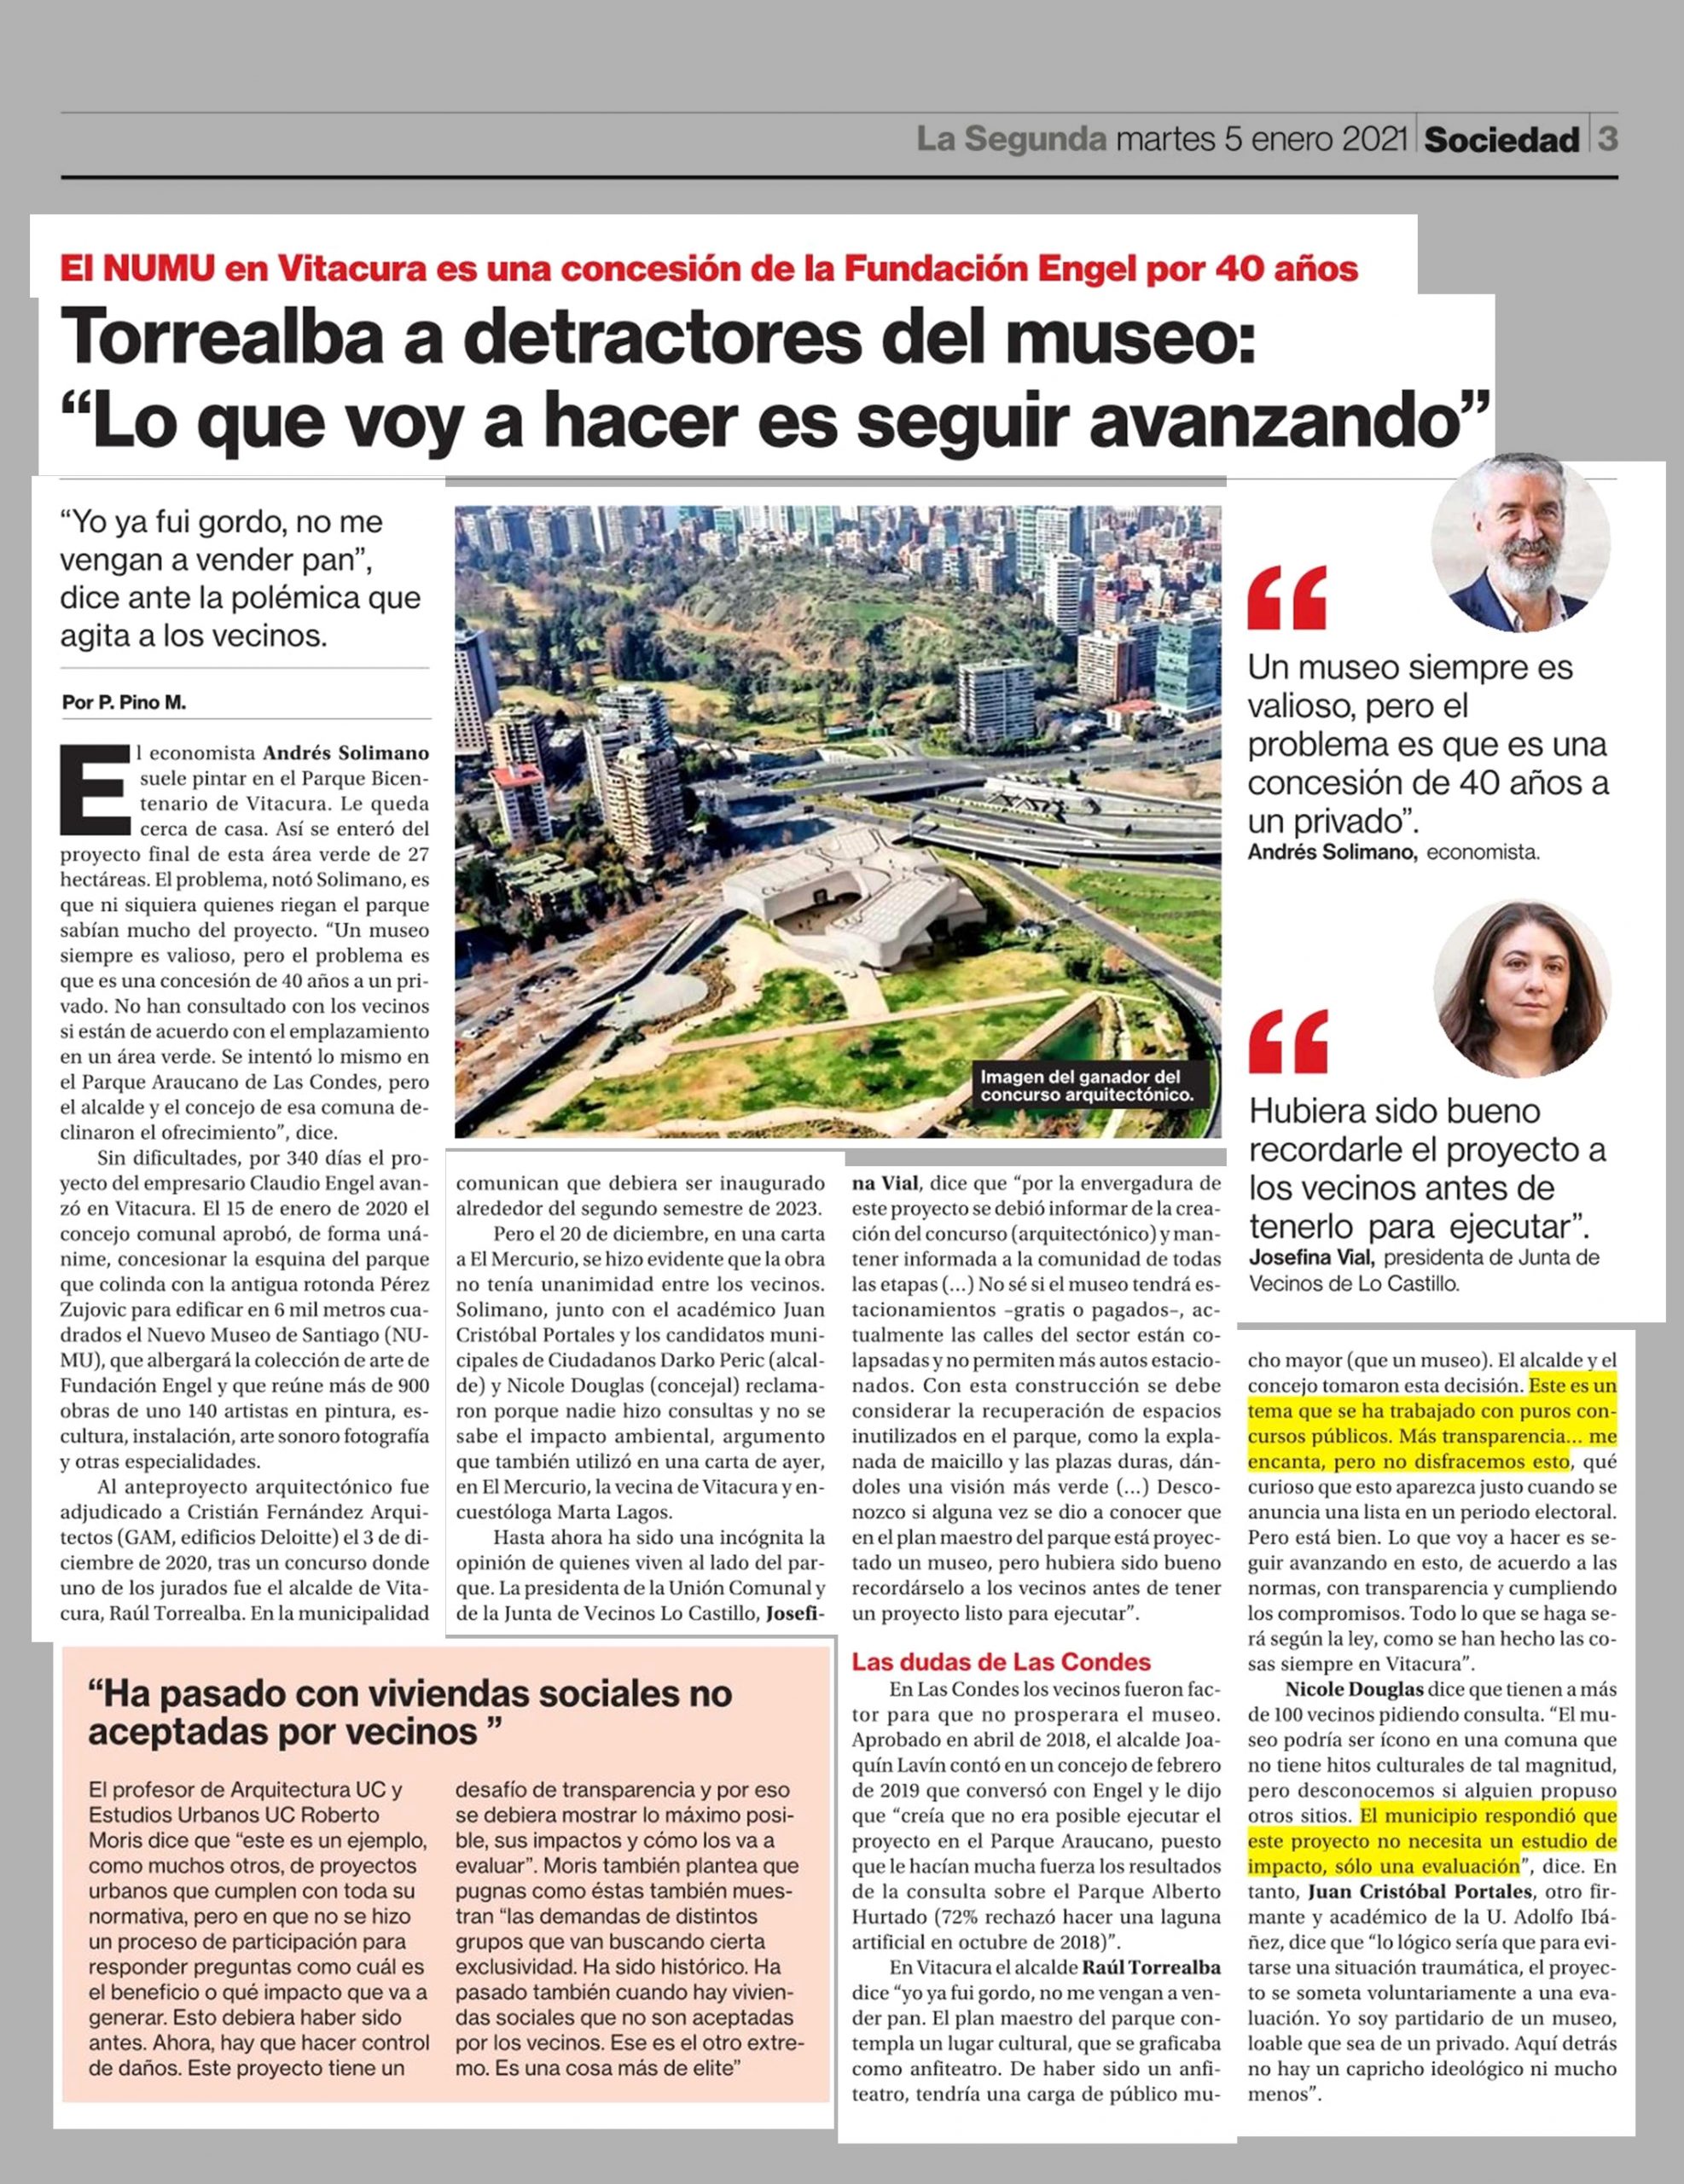 La Segunda: crece polémica por instalación del Nuevo Museo de Santiago (NUMU) en Vitacura